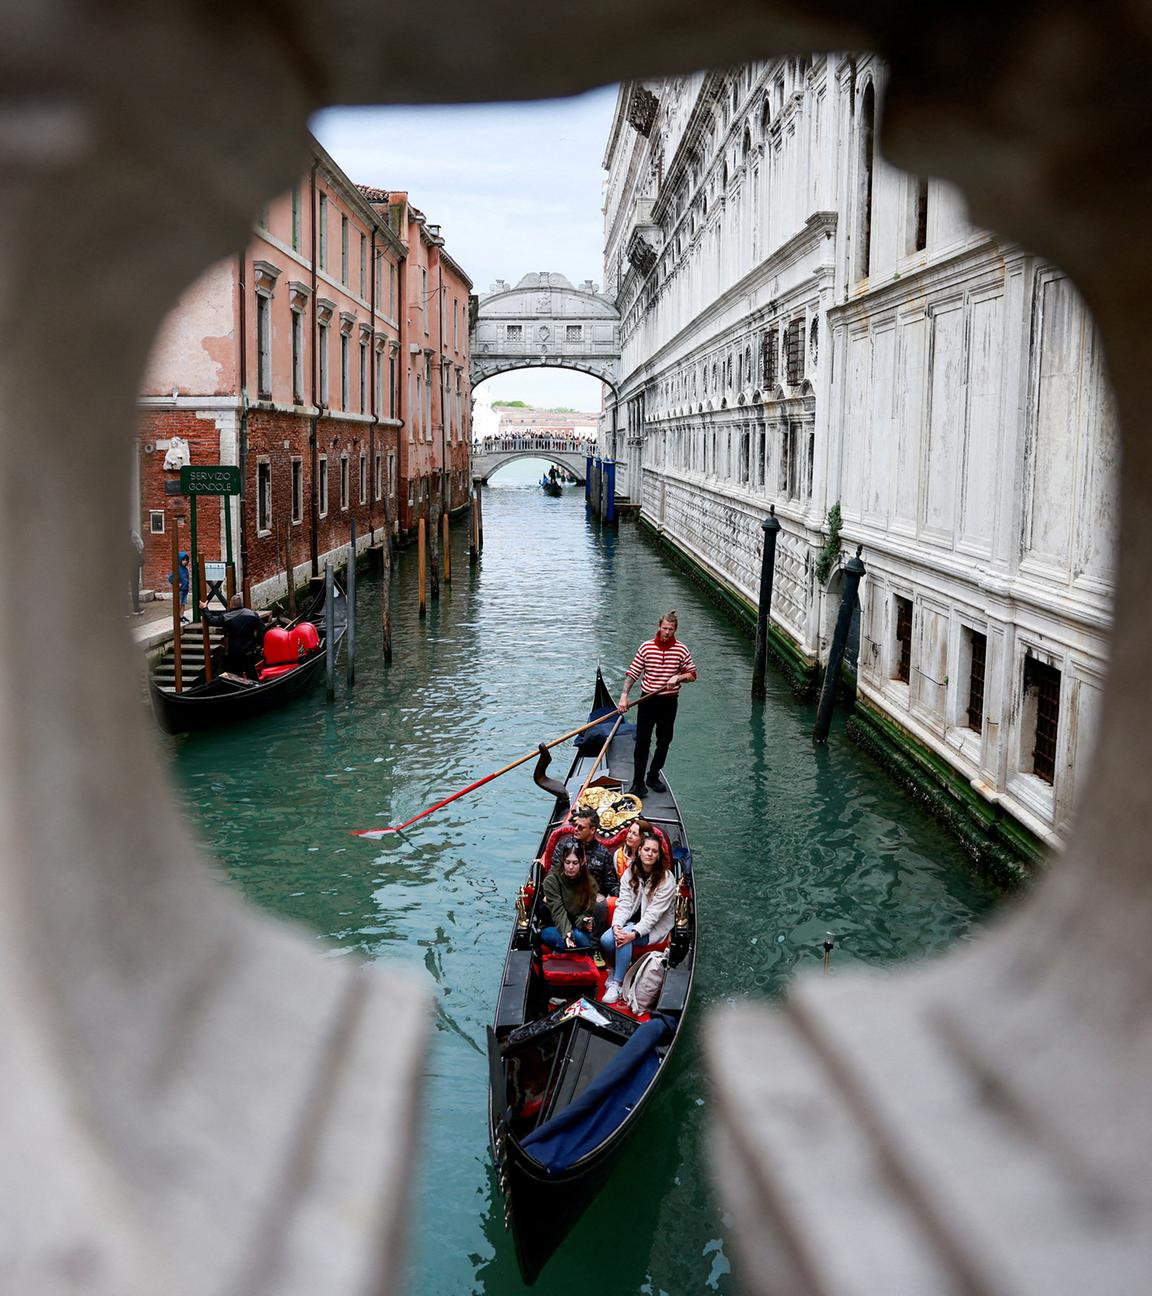 Ein Gondoliere rudert seine Gondel durch den Kanal von Venedig